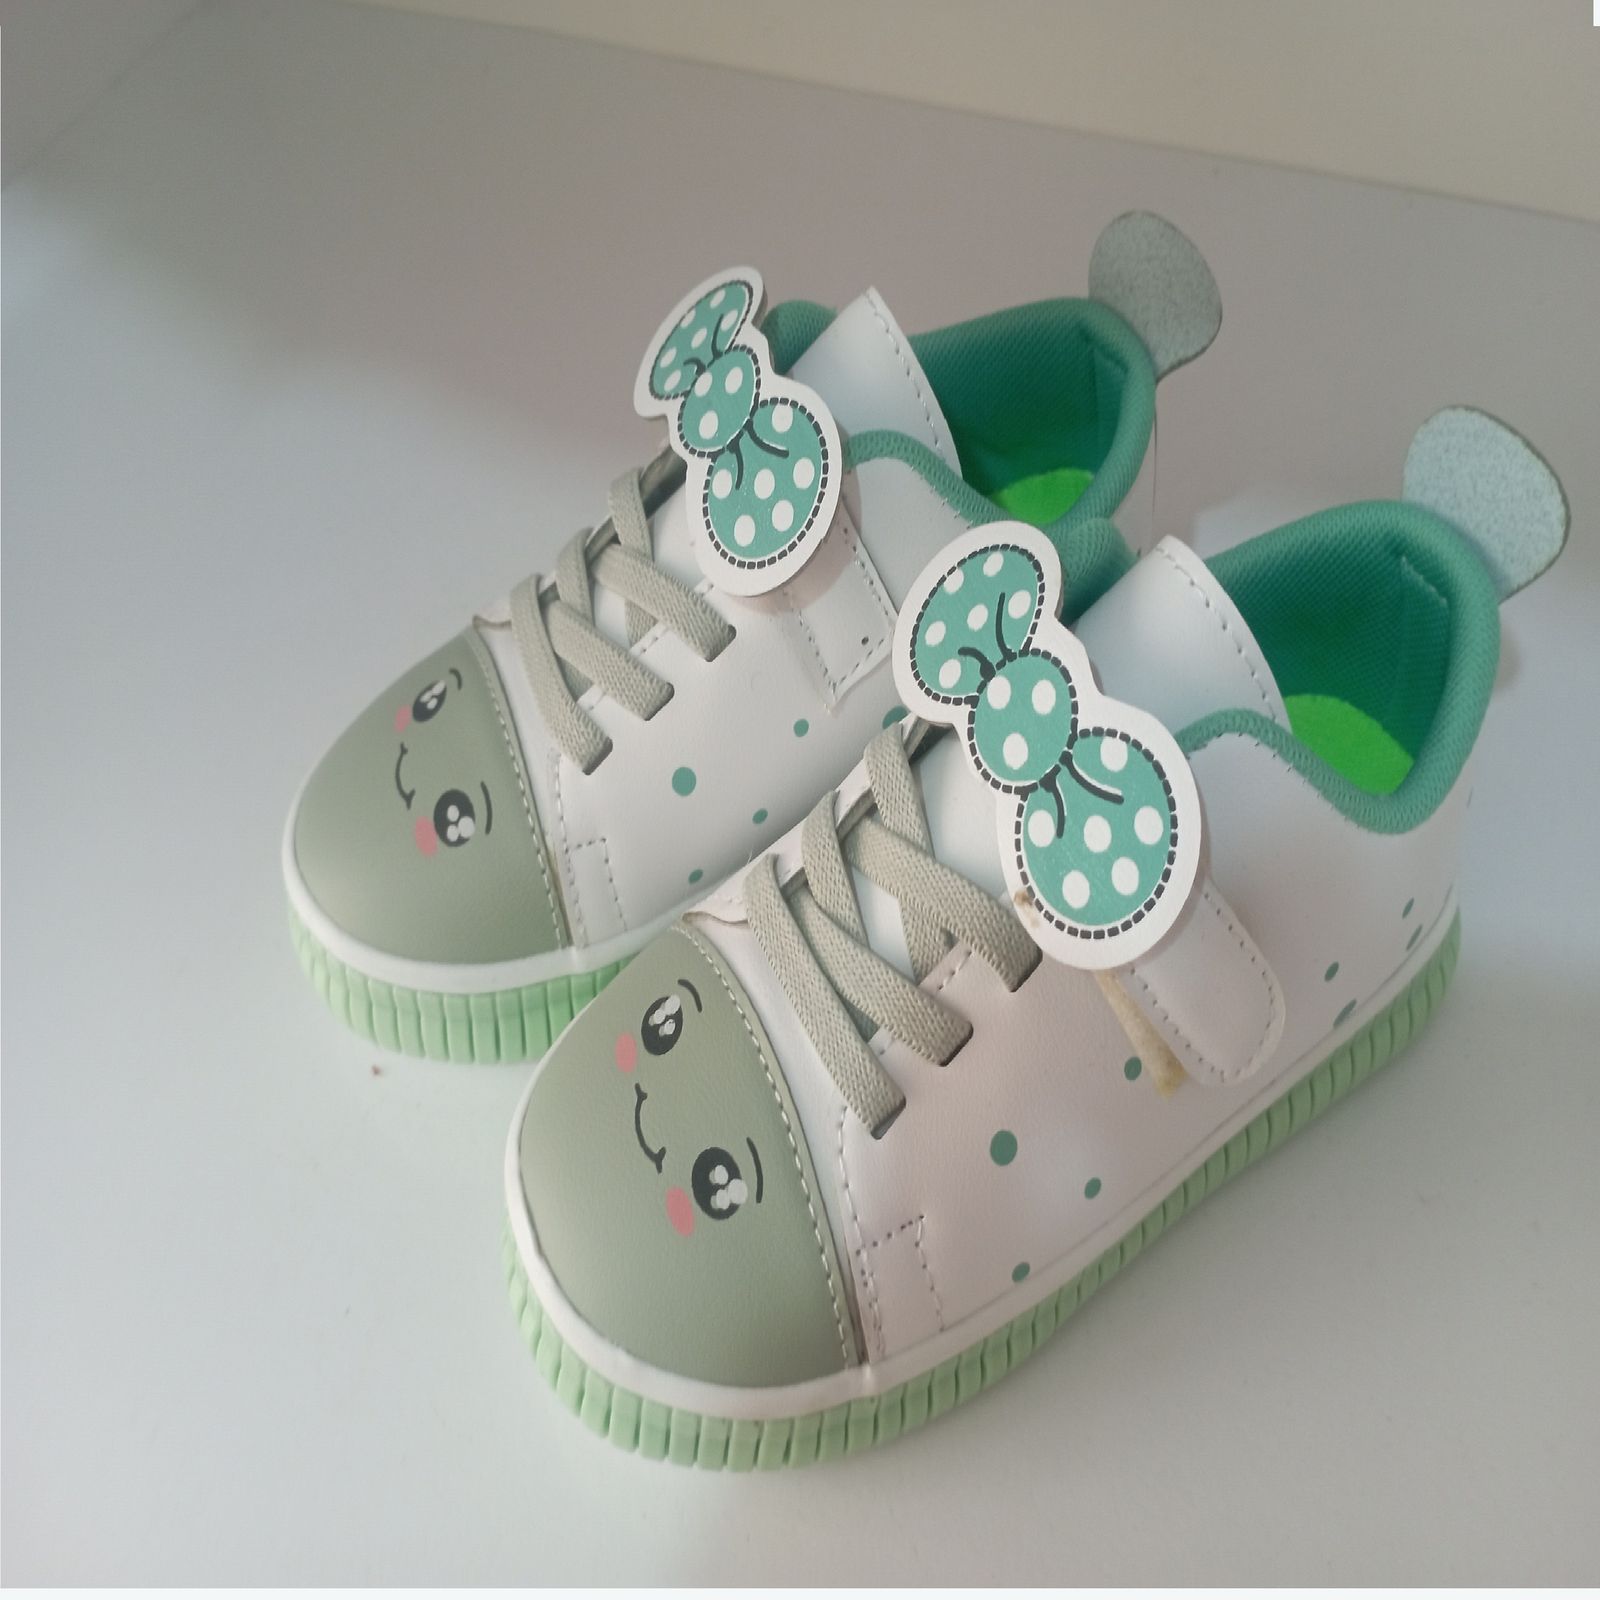  کفش راحتی بچگانه مدل پاپیونی کد 09 رنگ سبز  -  - 5